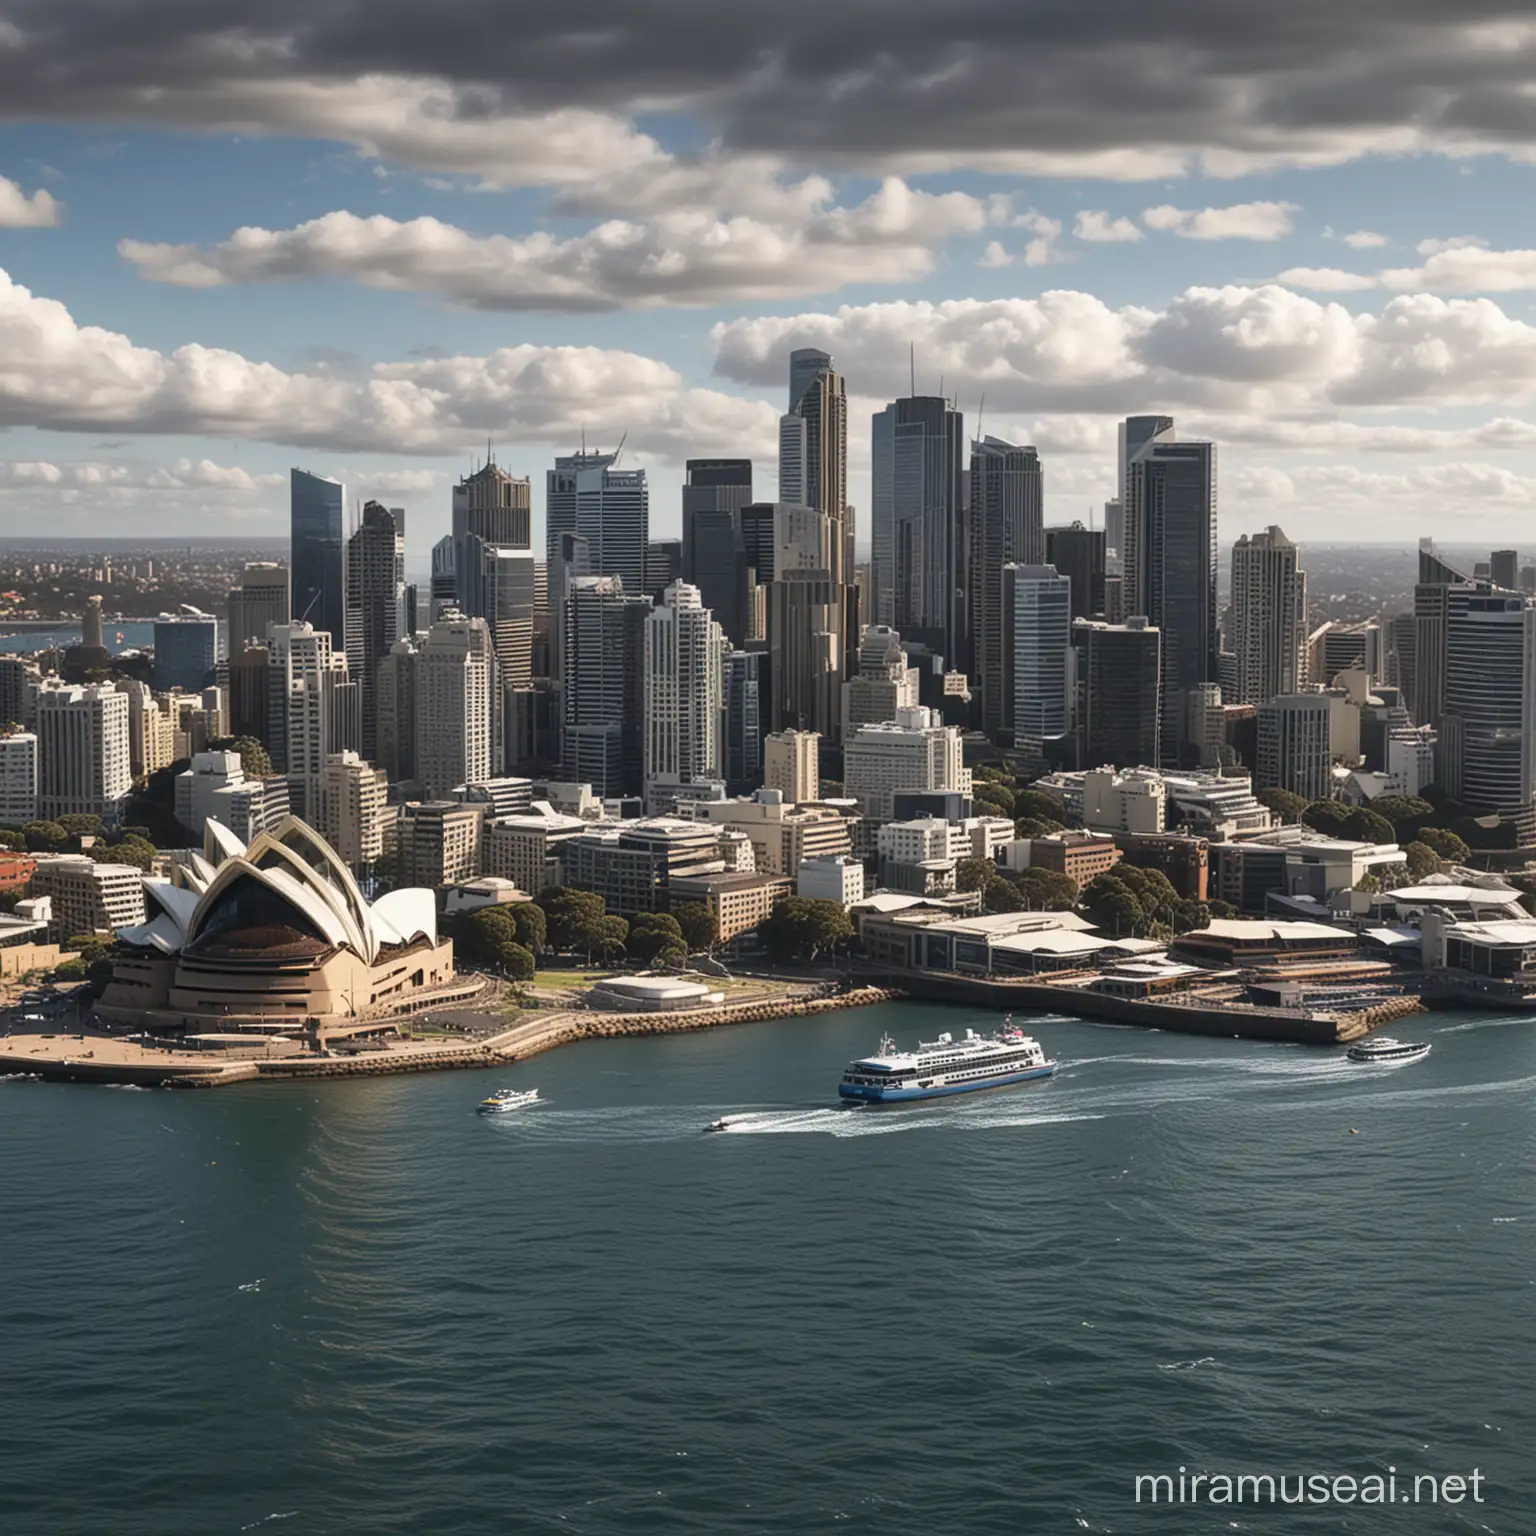 Sydney Skyline at Dusk with Iconic Landmarks